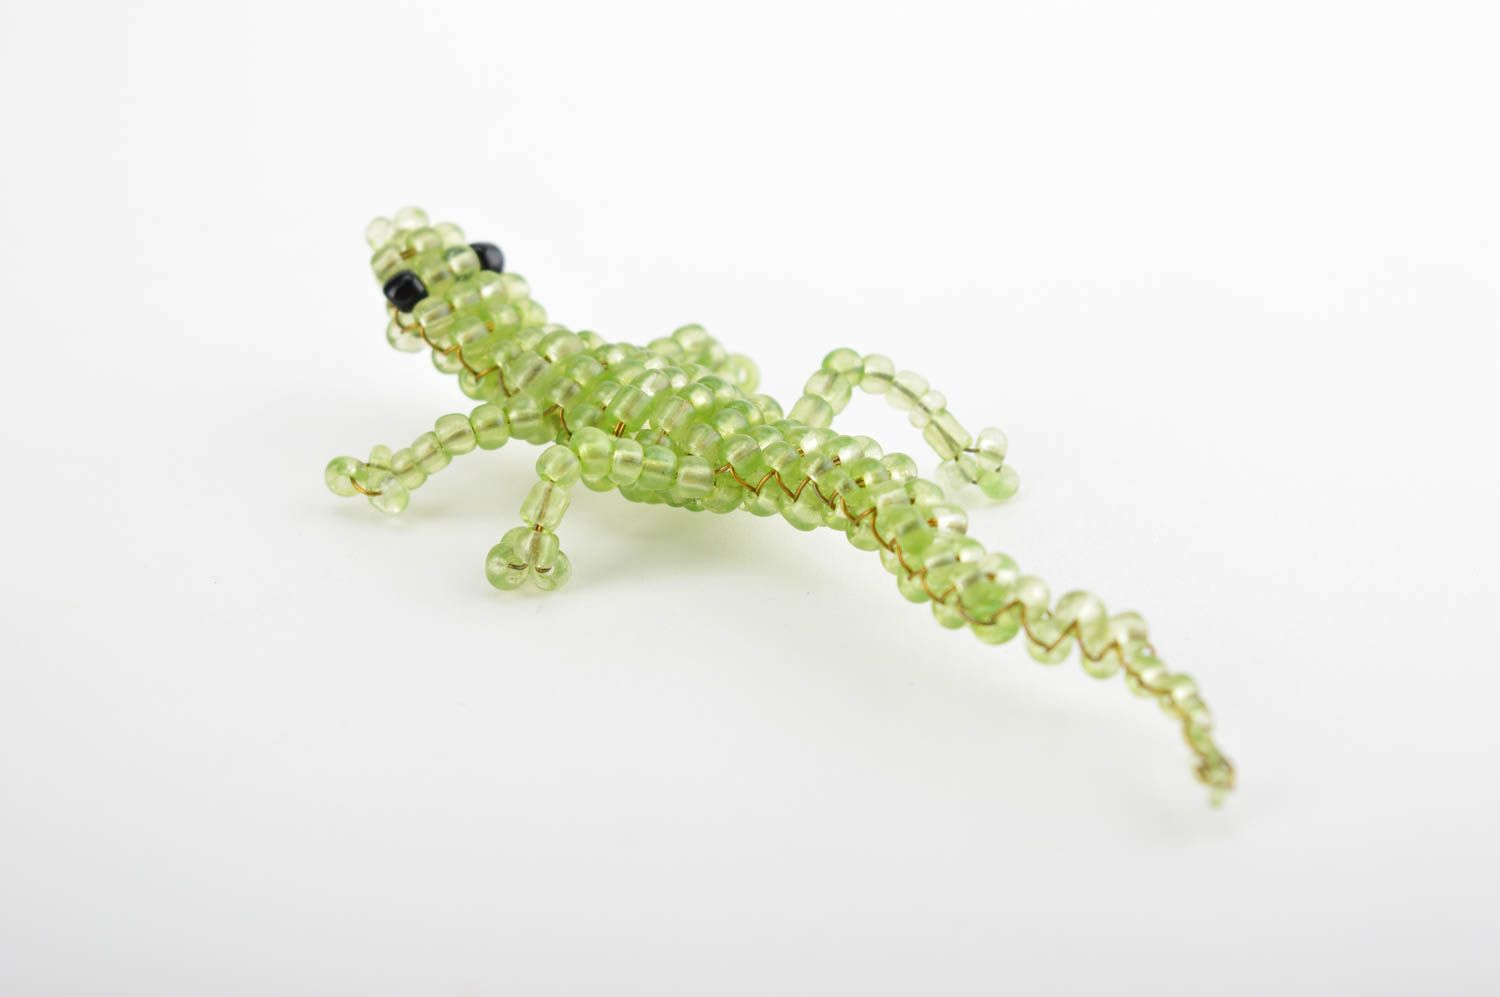 Статуэтка из бисера ручной работы зеленая ящерица из бисера фигурка из бисера фото 4